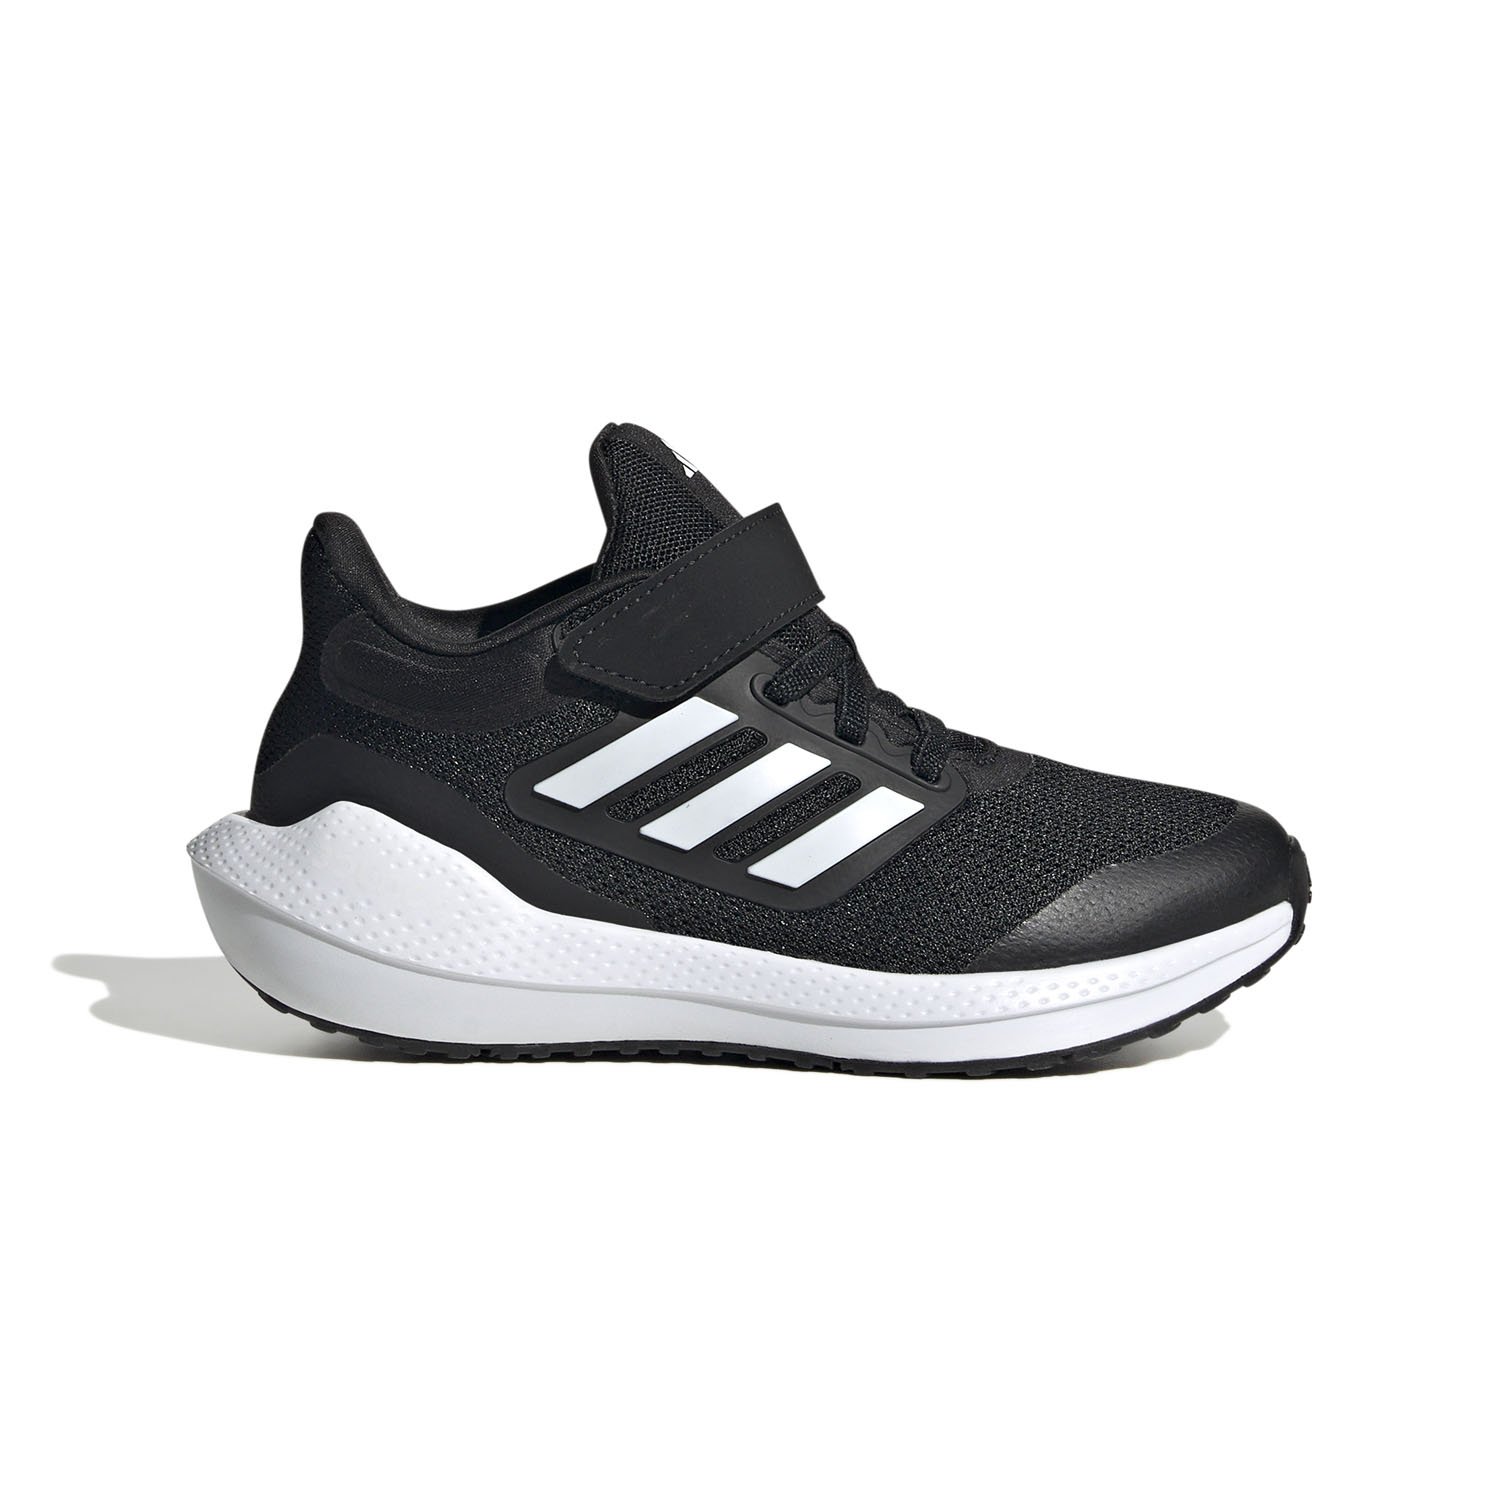 Adidas Ultrabounce Çocuk Koşu Ayakkabısı - Siyah - 1